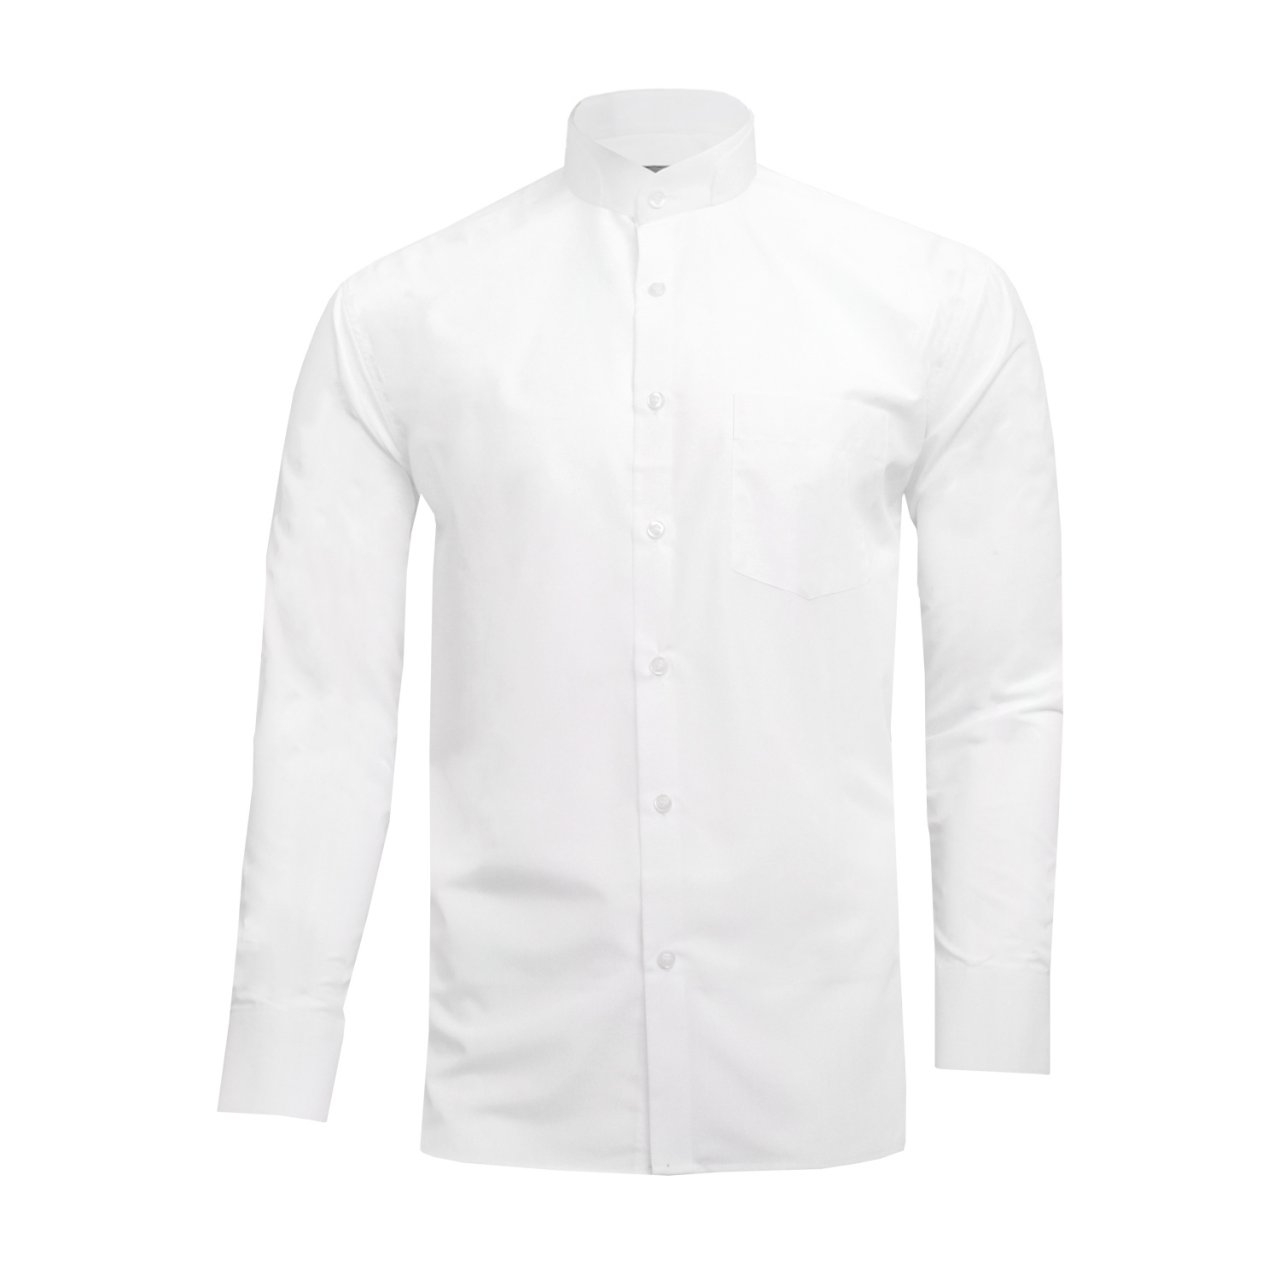 پیراهن آستین بلند مردانه نوید مدل دیپلمات رنگ سفید